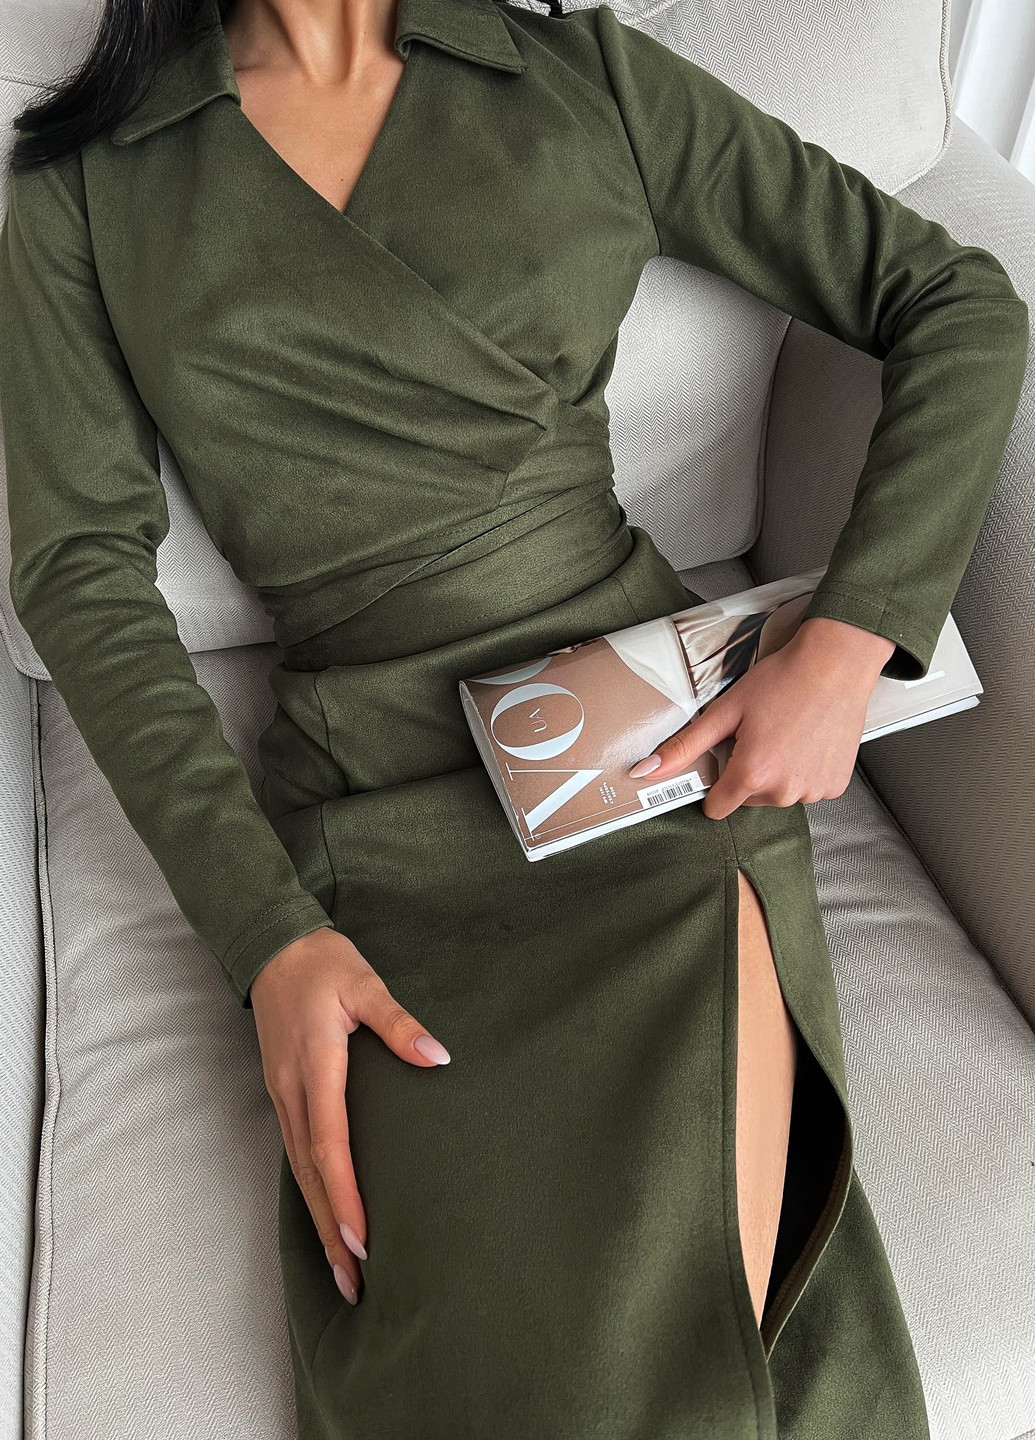 Оливковое (хаки) деловое стильное платье миди из еко замши Jadone Fashion однотонное